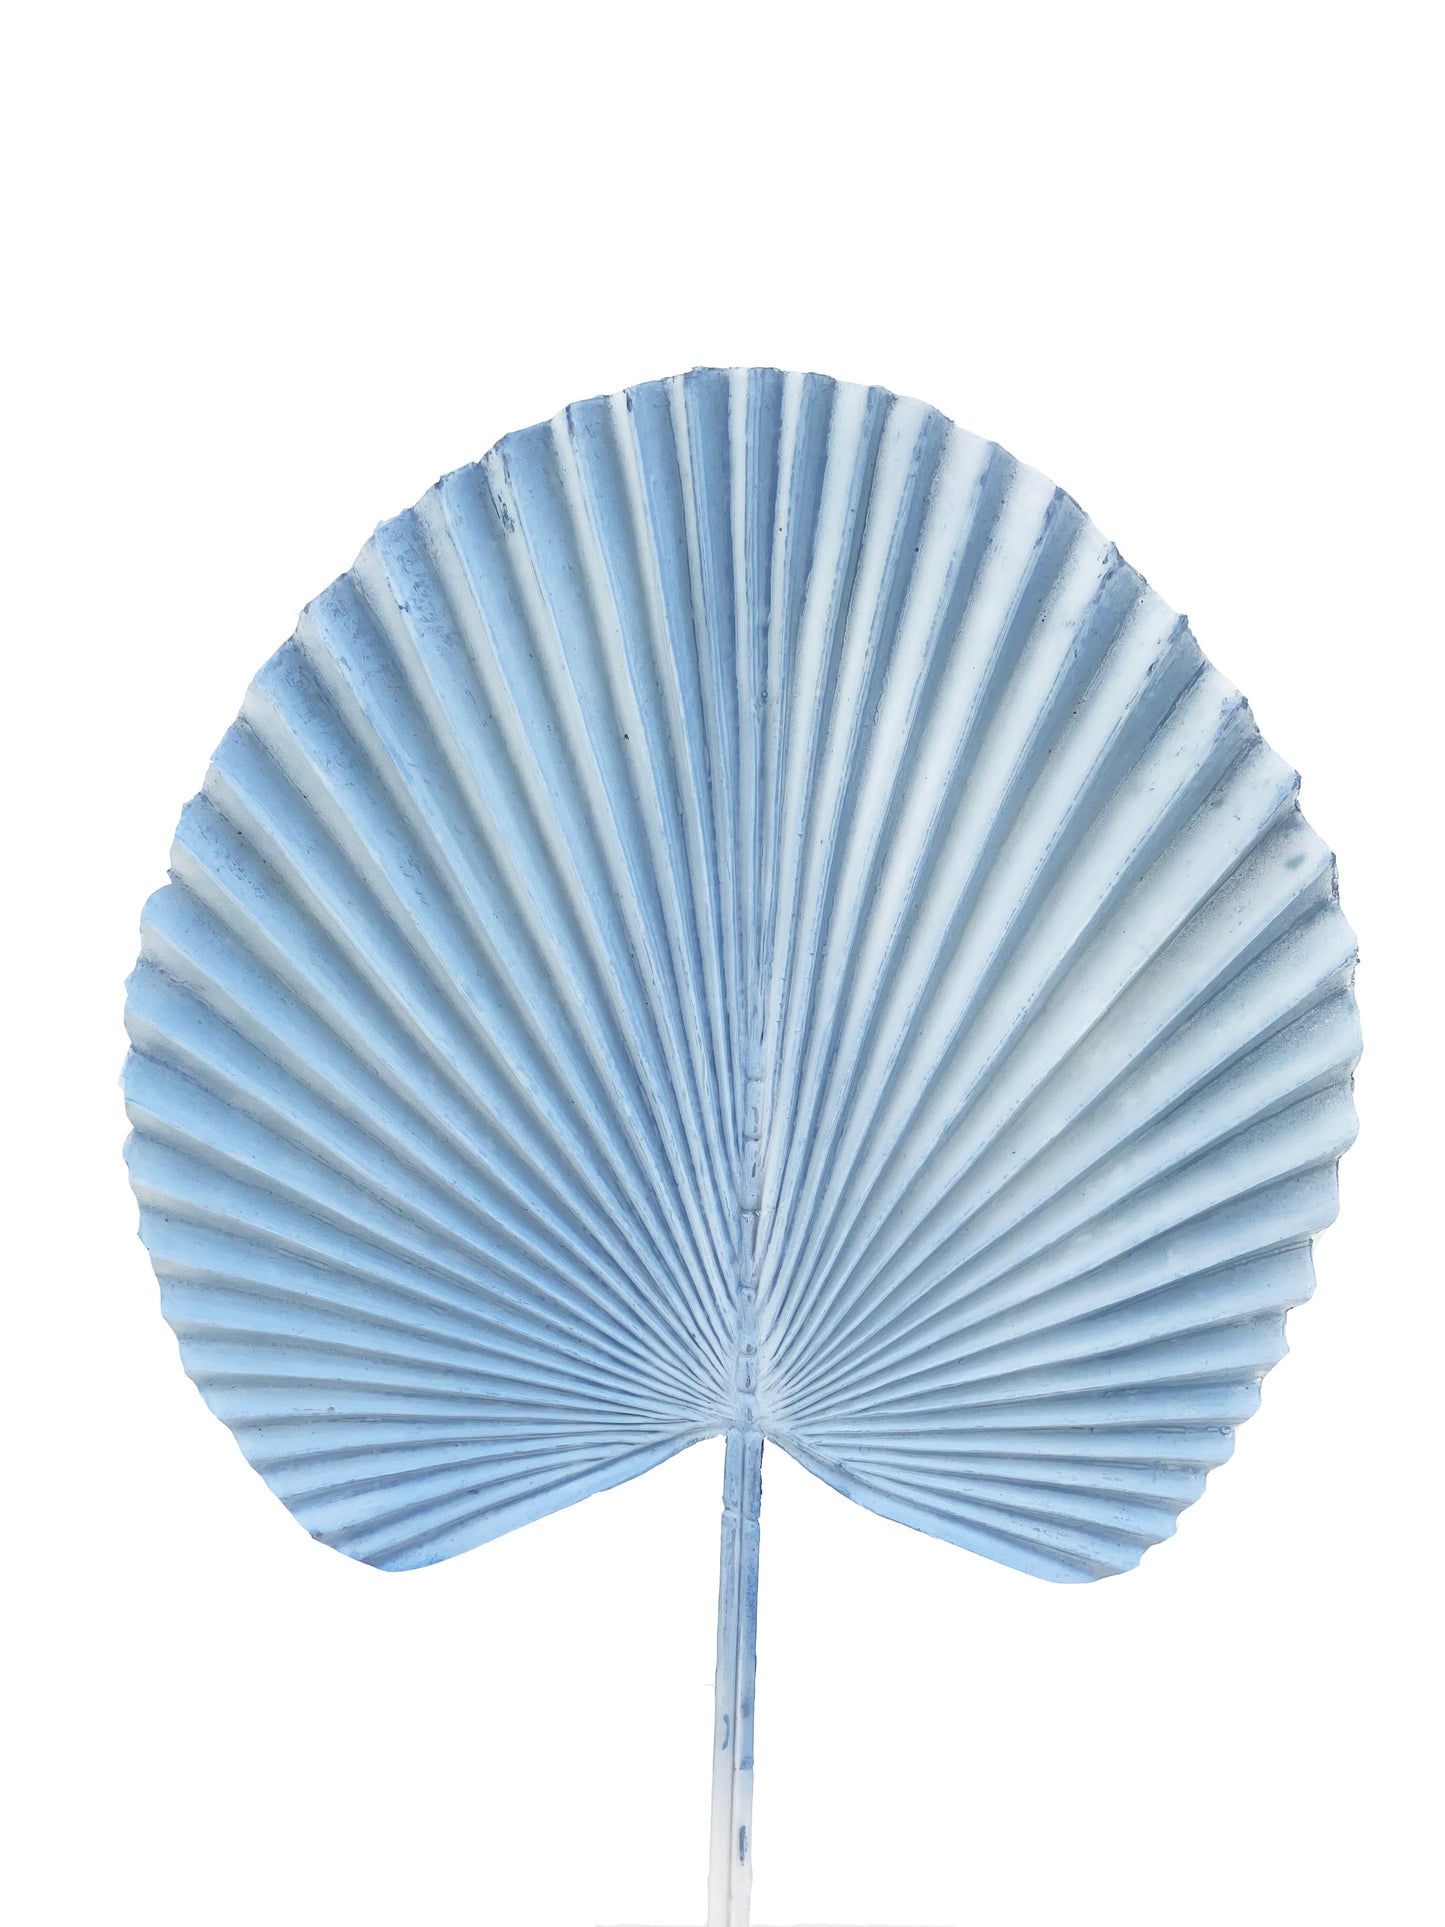 artificial fan palm pale blue